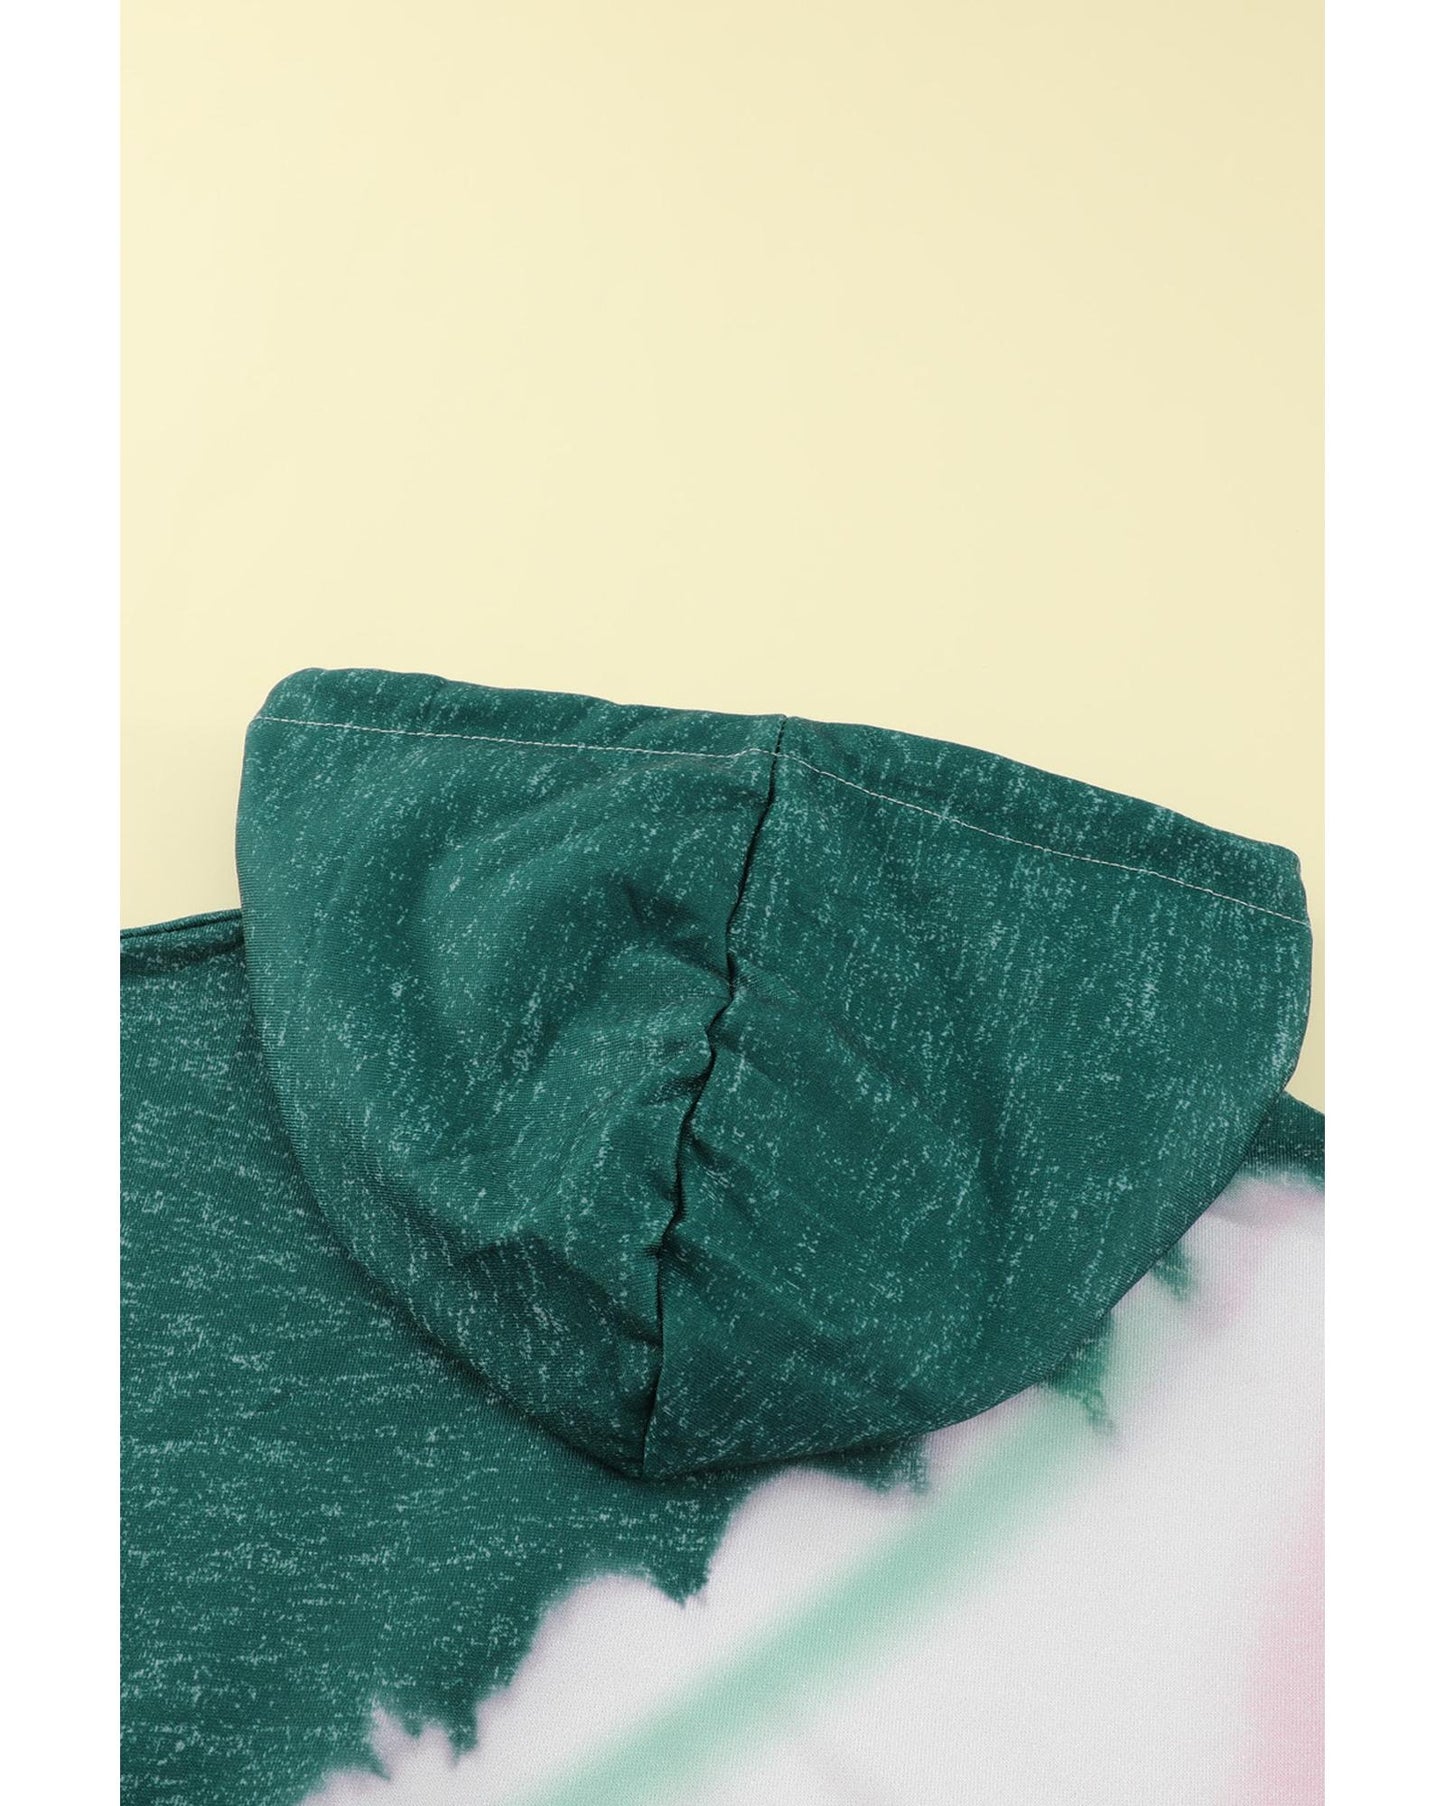 Azura Exchange Tie Dye Print Hooded Sweatshirt with Pocket - S